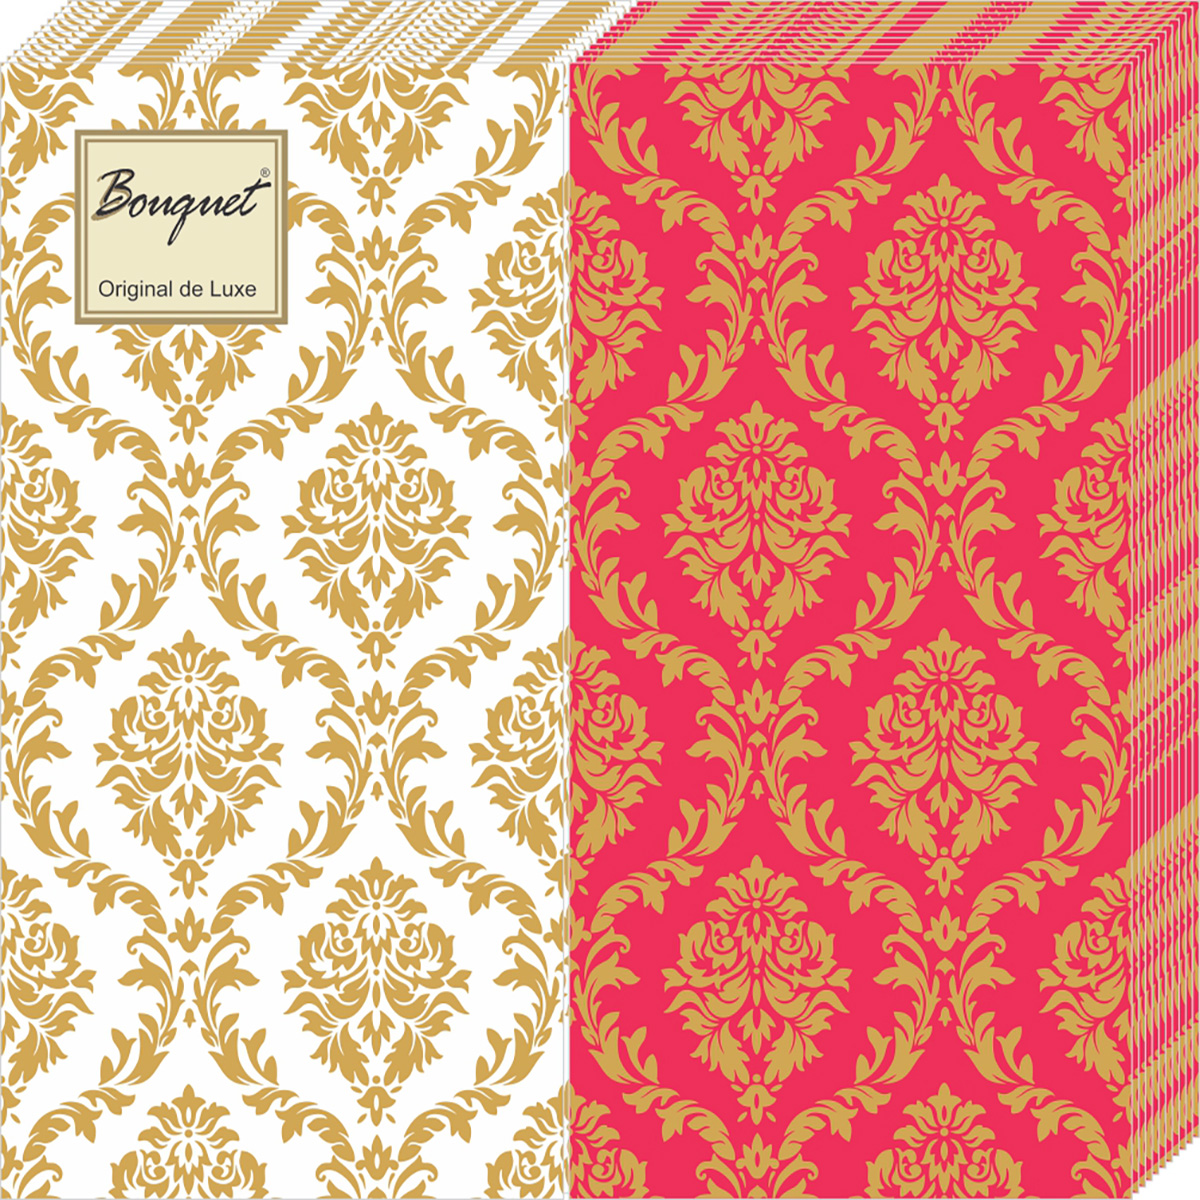 Салфетки Bouquet de luxe бумажные mix золотой орнамент 2сл 20л